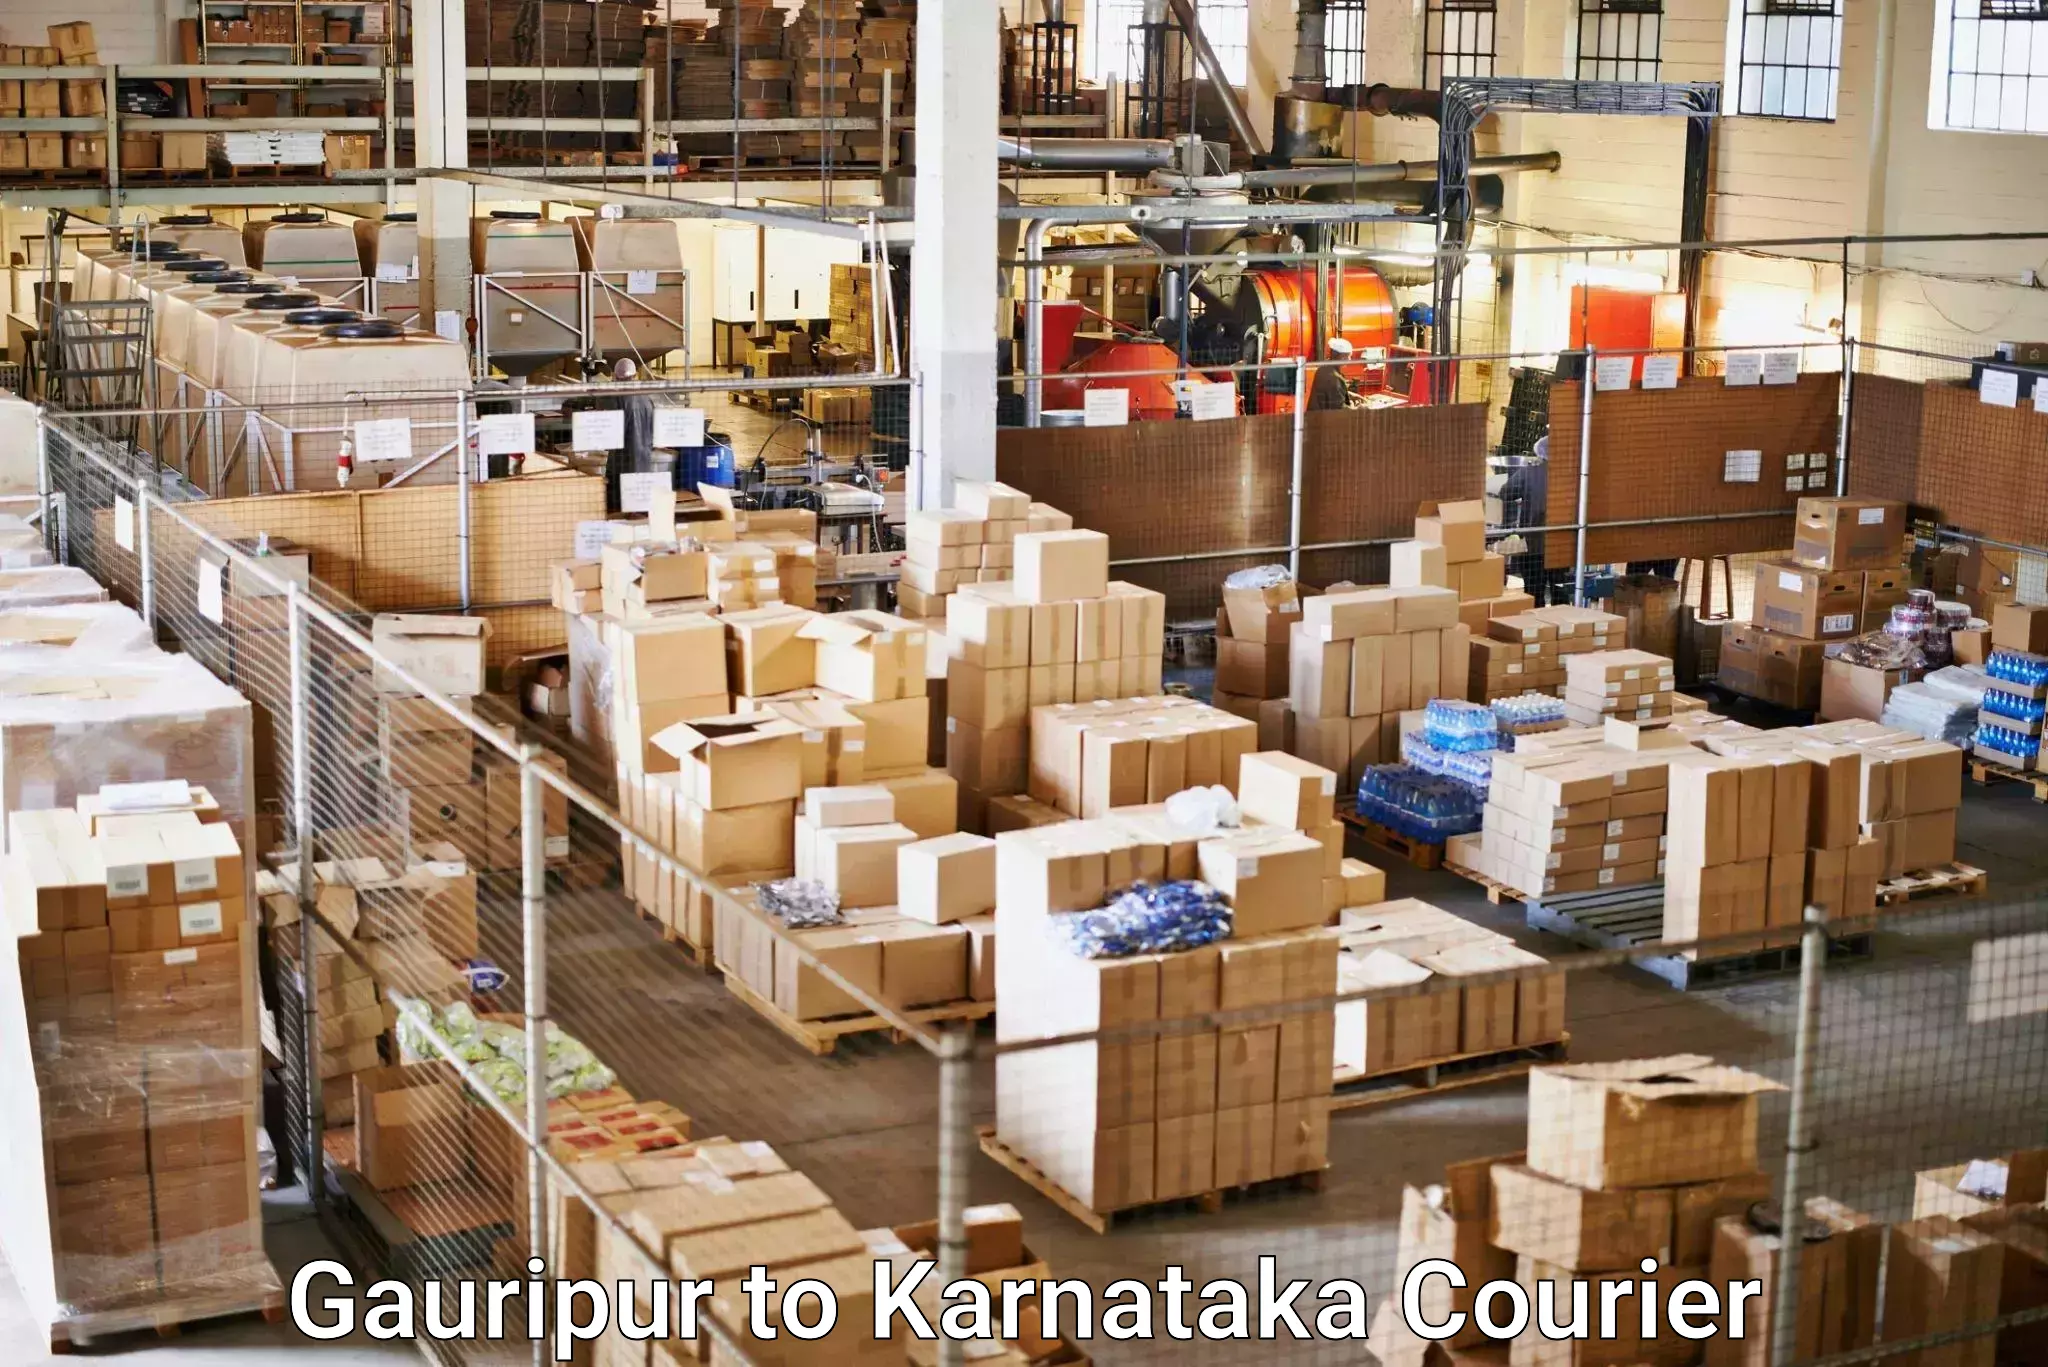 High-capacity parcel service Gauripur to Khanapur Karnataka